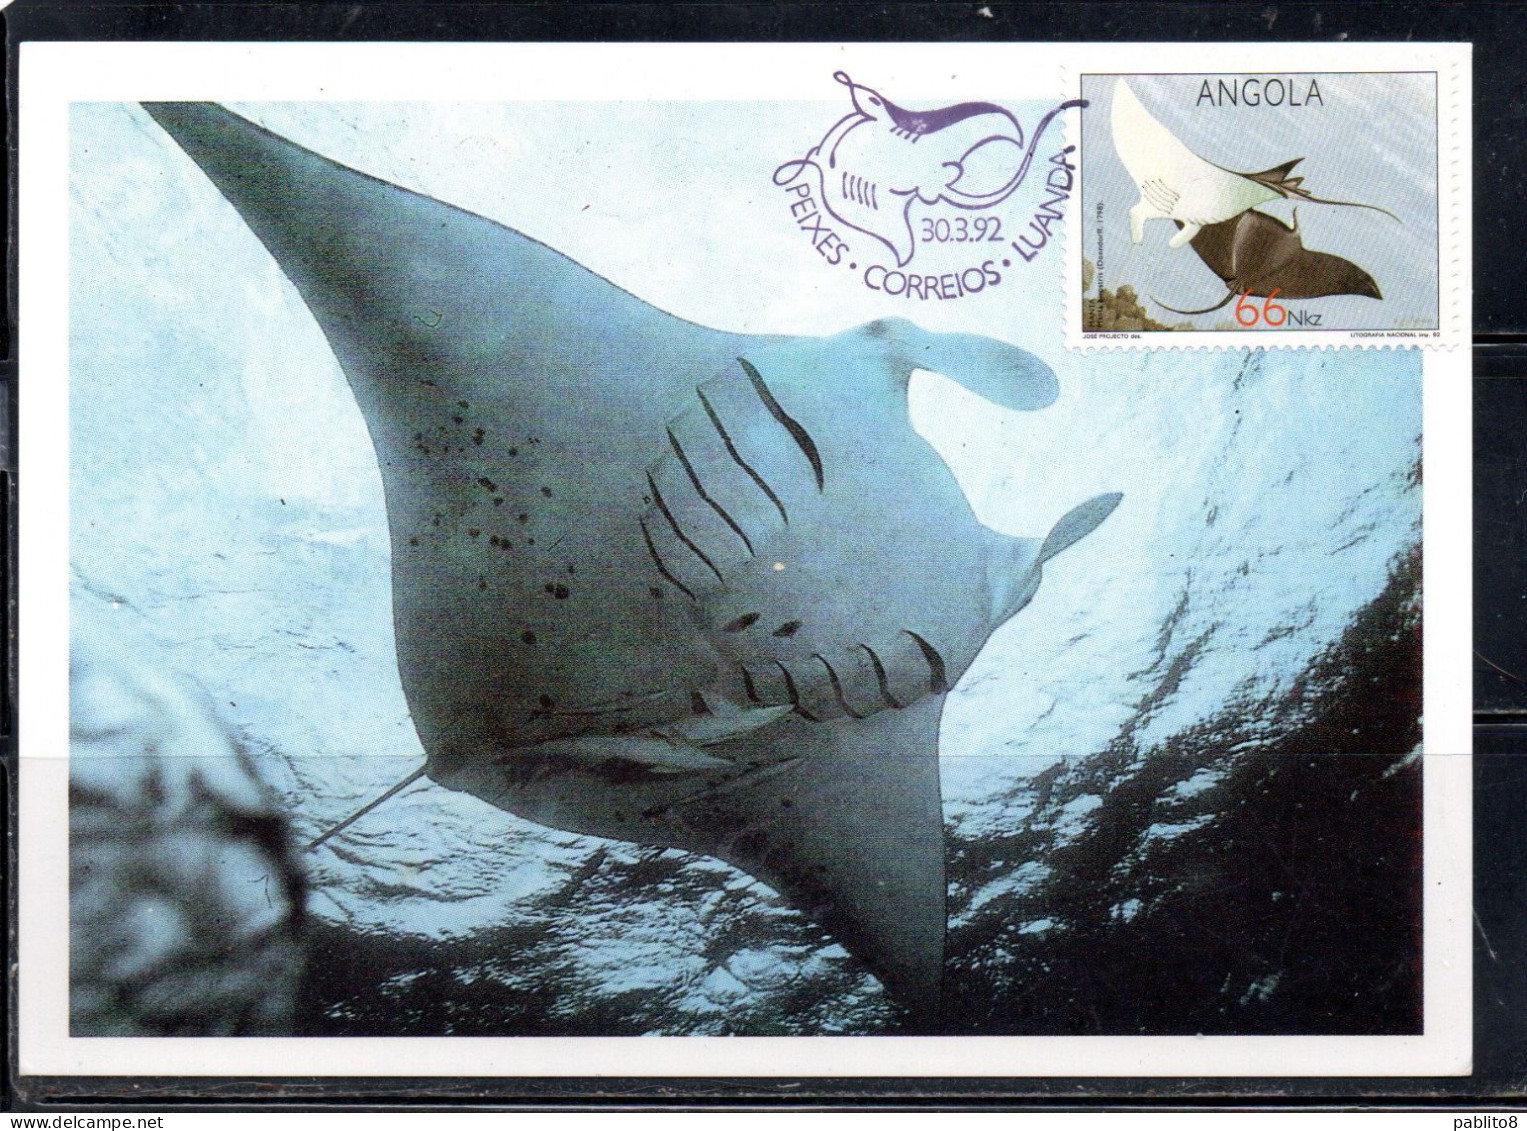 ANGOLA 1992 RAYS MANTA BIROSTRIS 66k MAXI MAXIMUM CARD - Angola